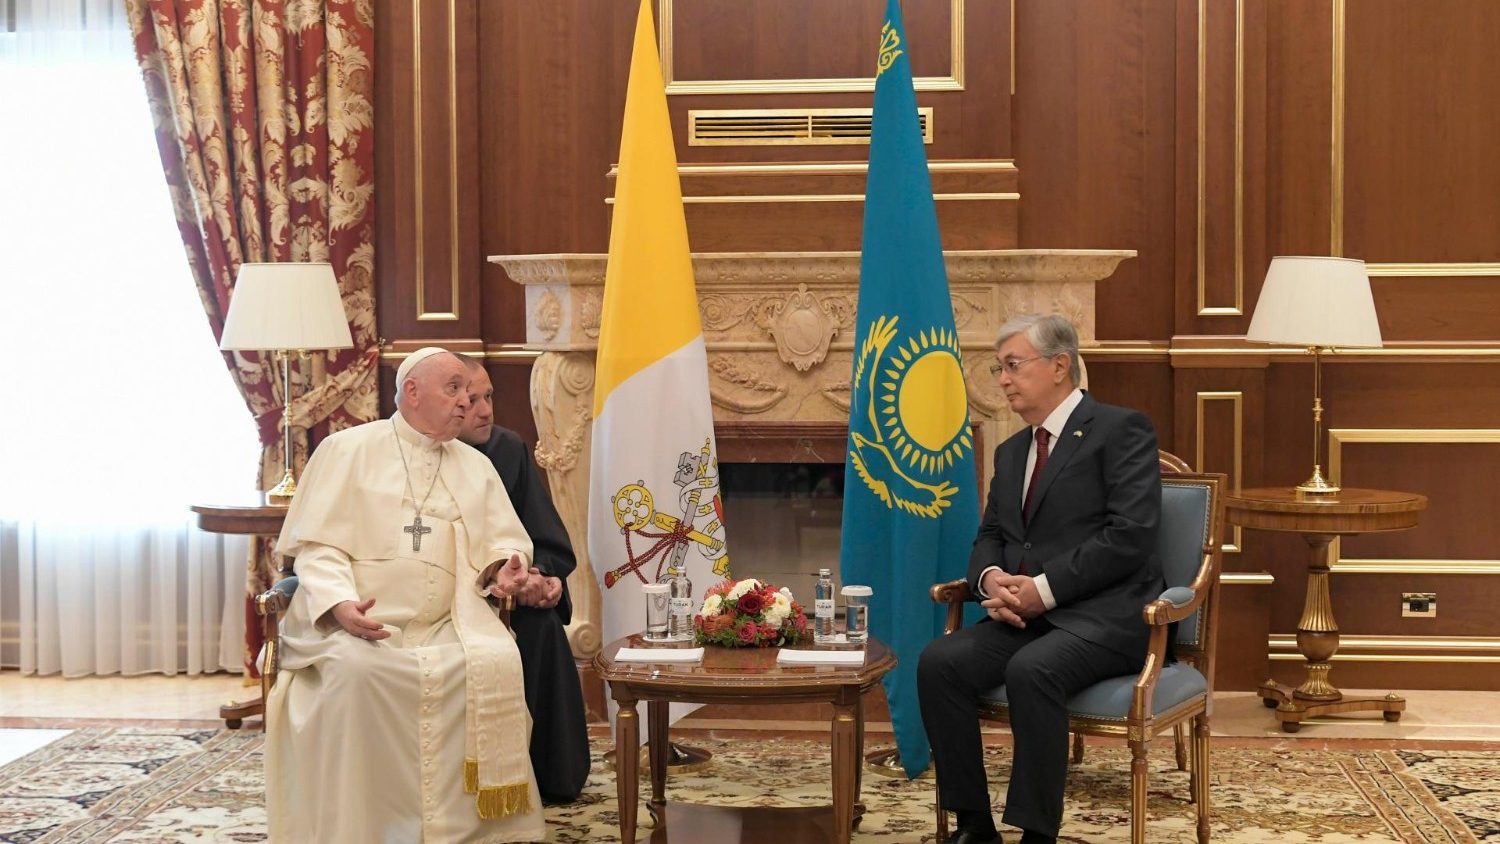 Đức Thánh Cha đến sân bay Nur-Sultan và được Tổng thống Kazakhstan chào đón